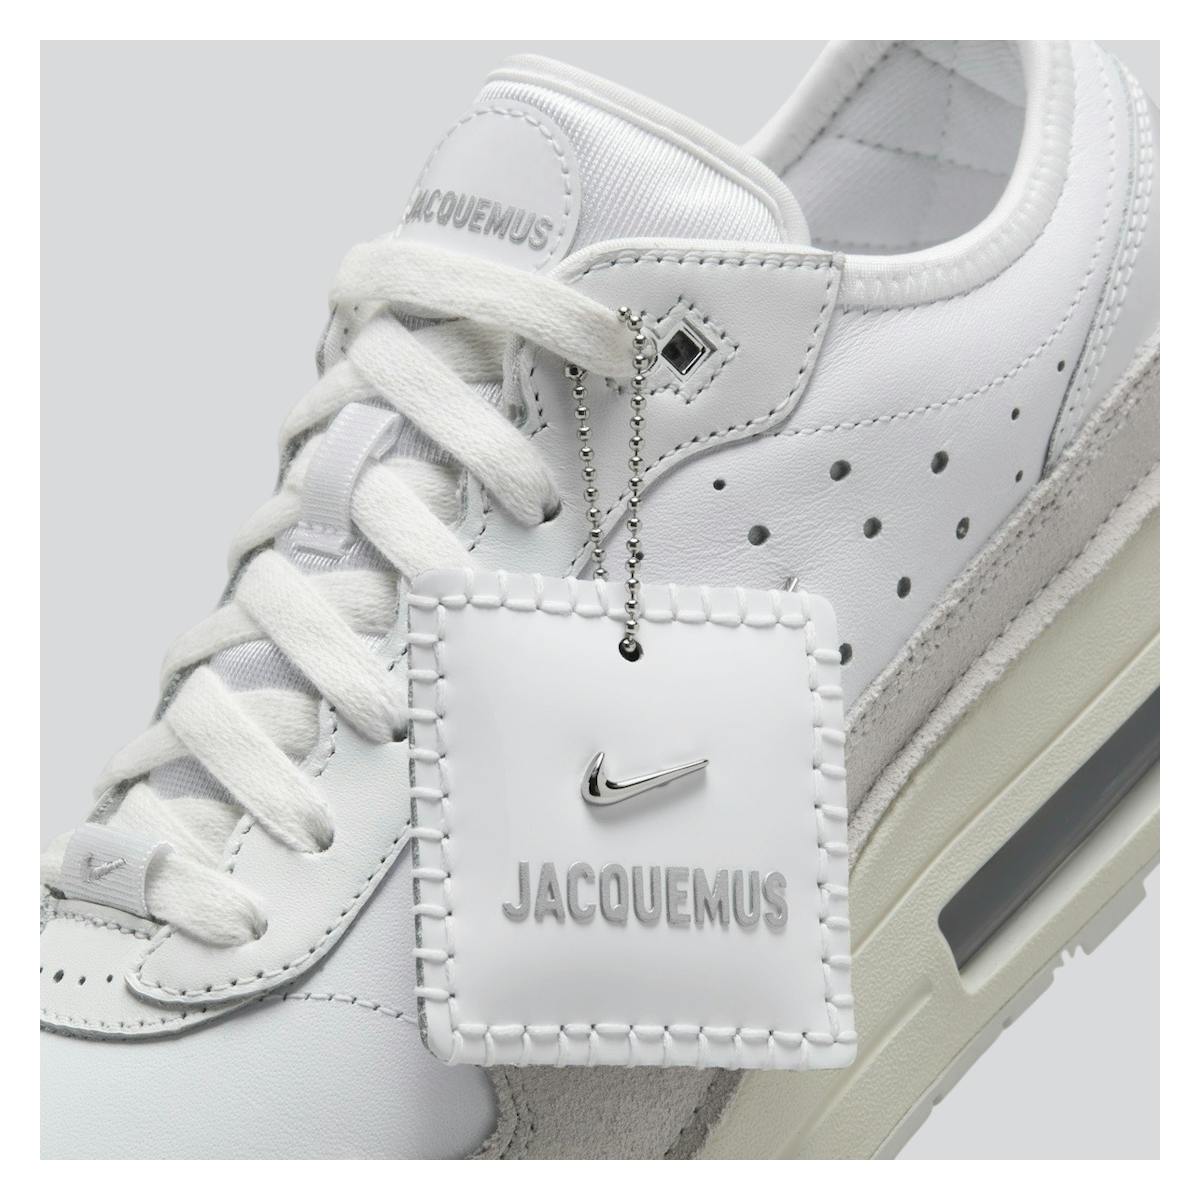 Jacquemus x Nike Air Max 1 '86 "Summit White"